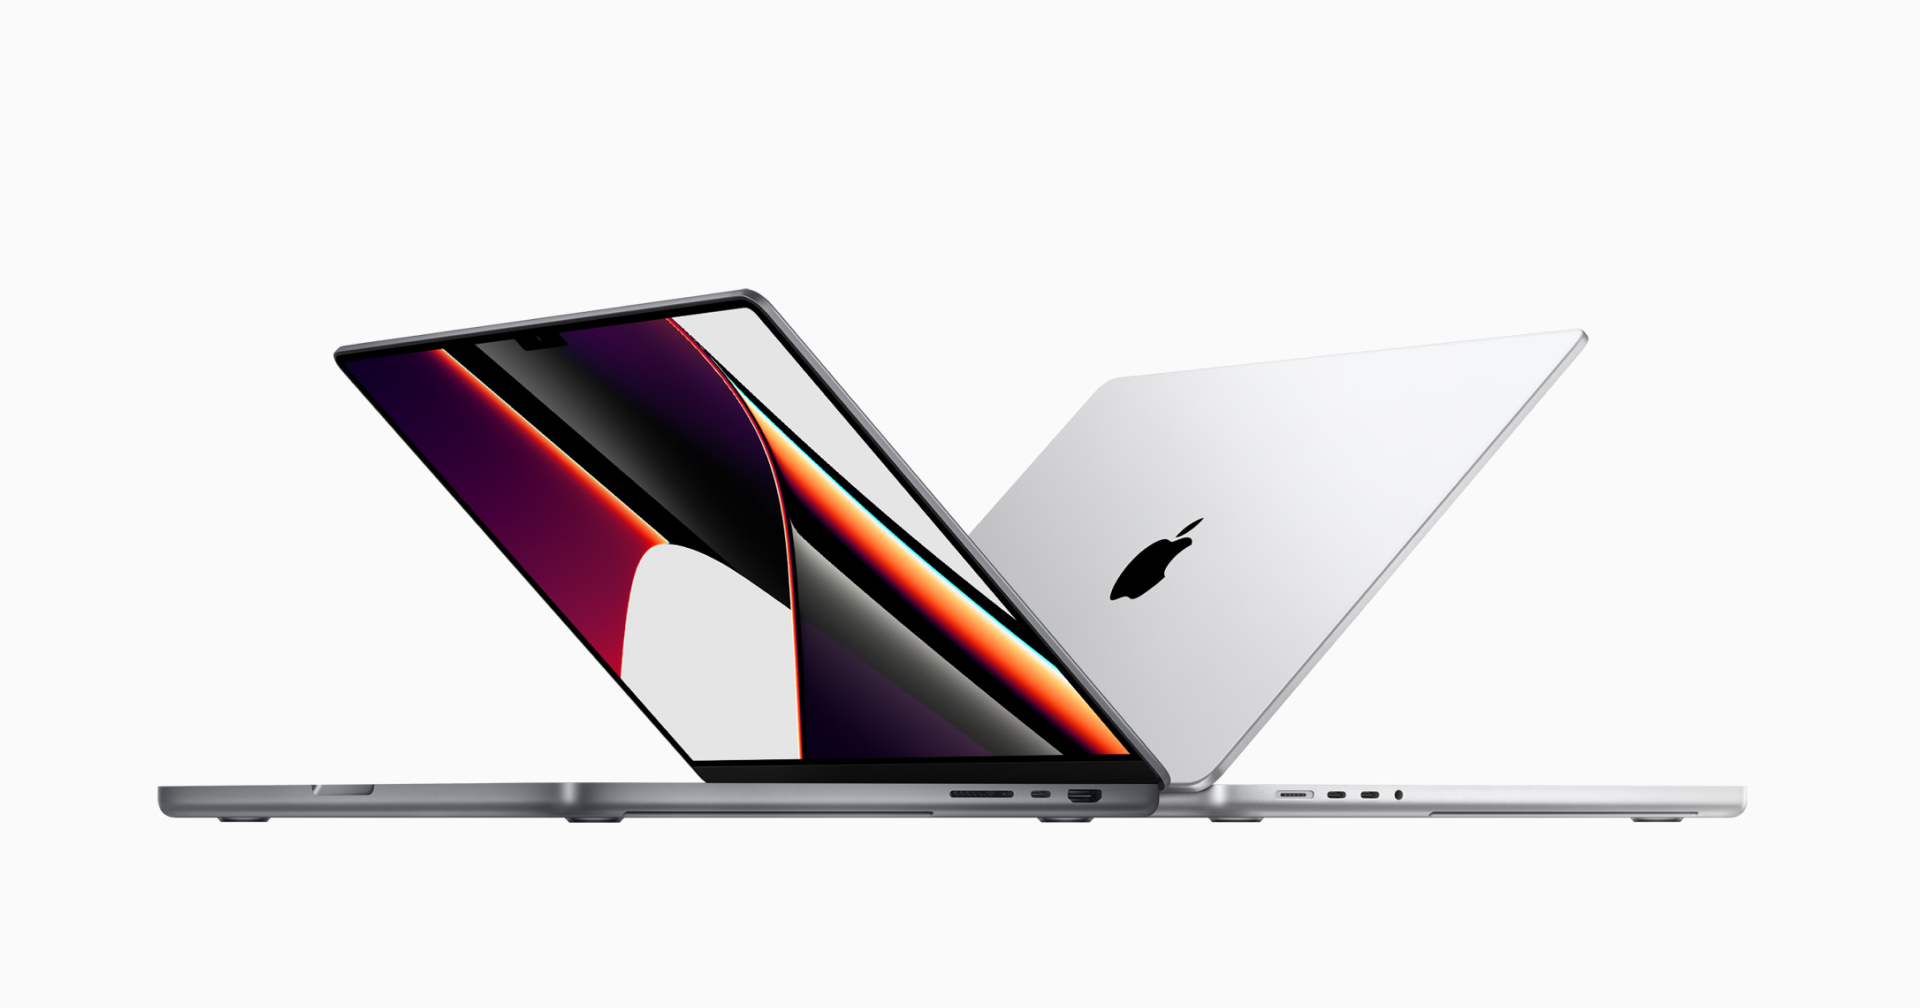 เปิดตัว MacBook Pro 2 ขนาด ดีไซนใหม่ จอติ่ง พอร์ตเพียบ แรงสุดด้วยขุมพลัง M1 Pro/Max